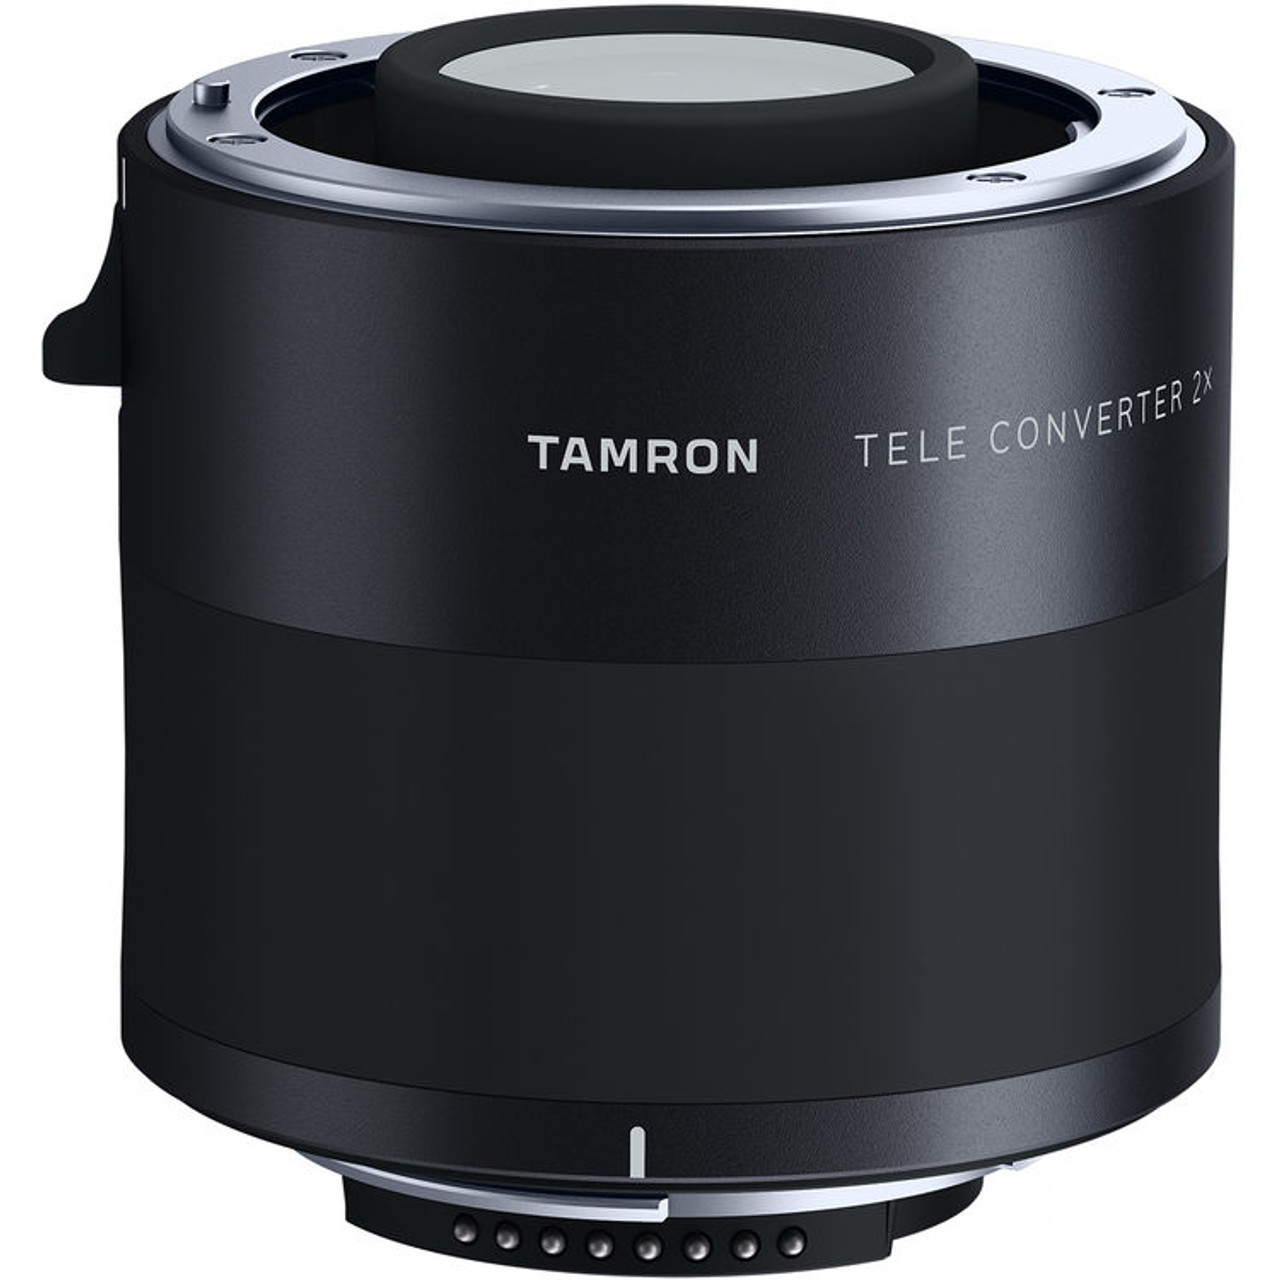 Tamron Teleconverter 2.0 for Nikon TC-X20N at Acephoto.net